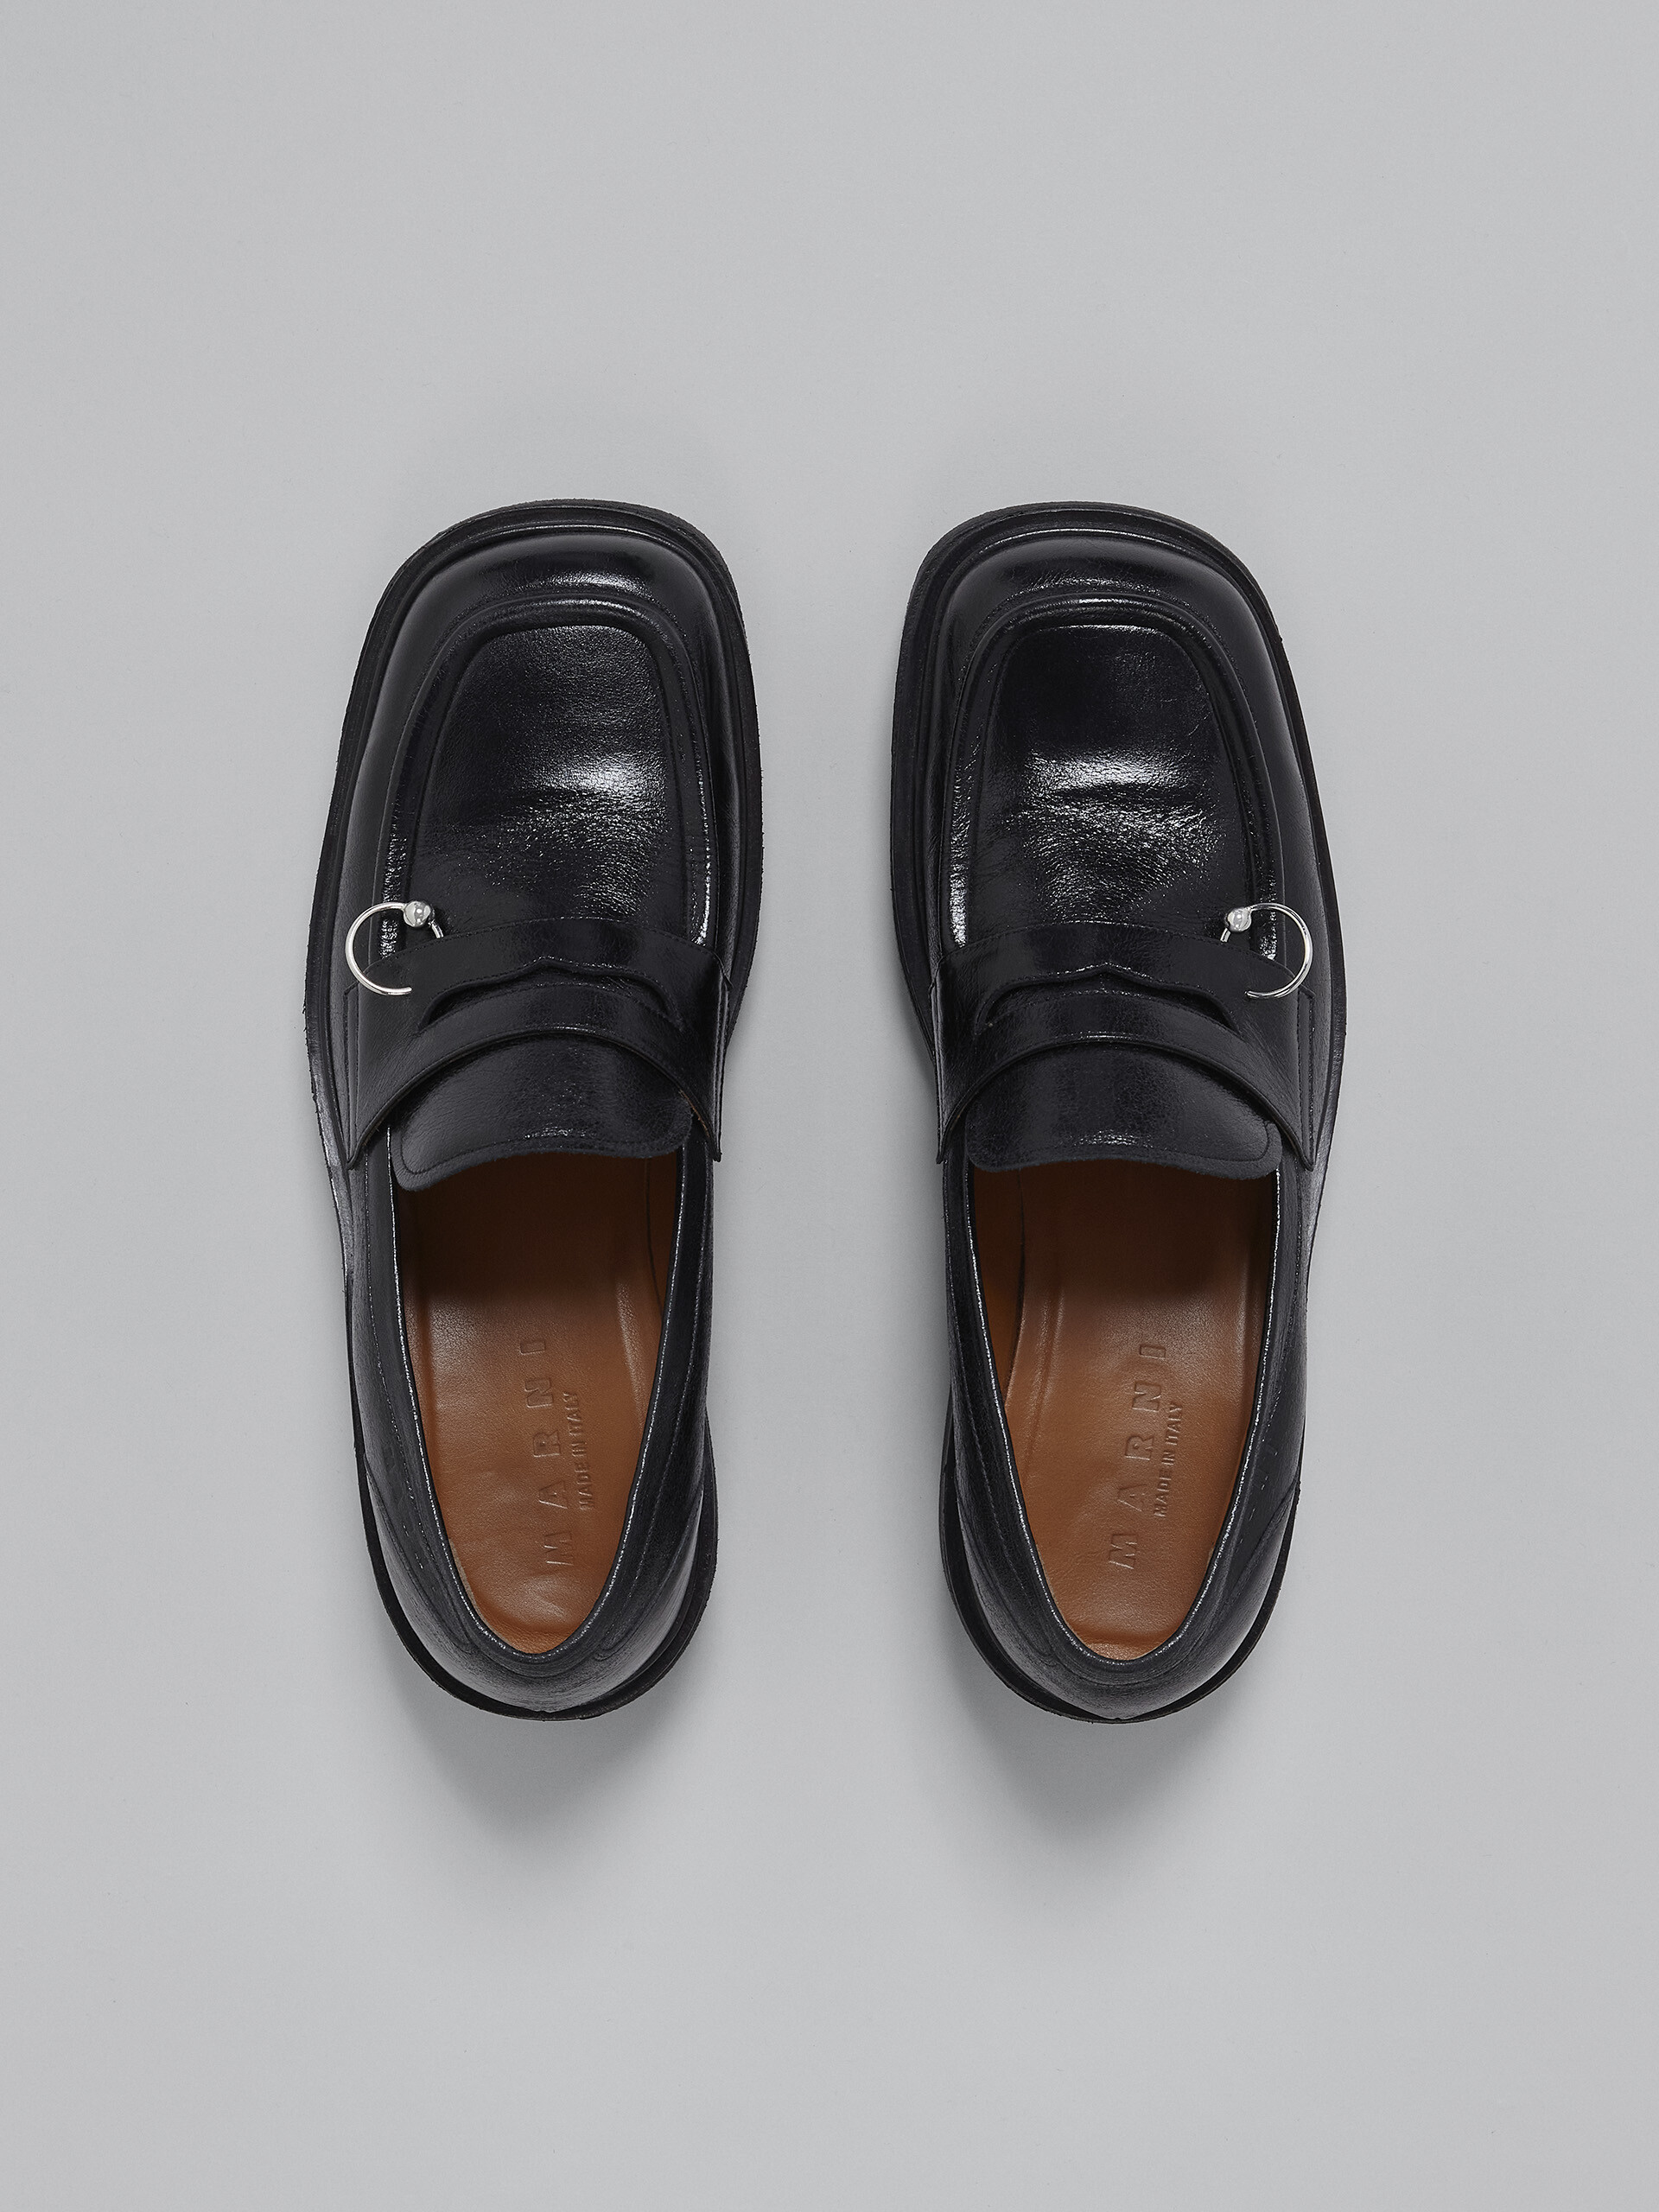 Mokassin aus schwarzem, glänzendem Leder - Schnürschuhe - Image 4